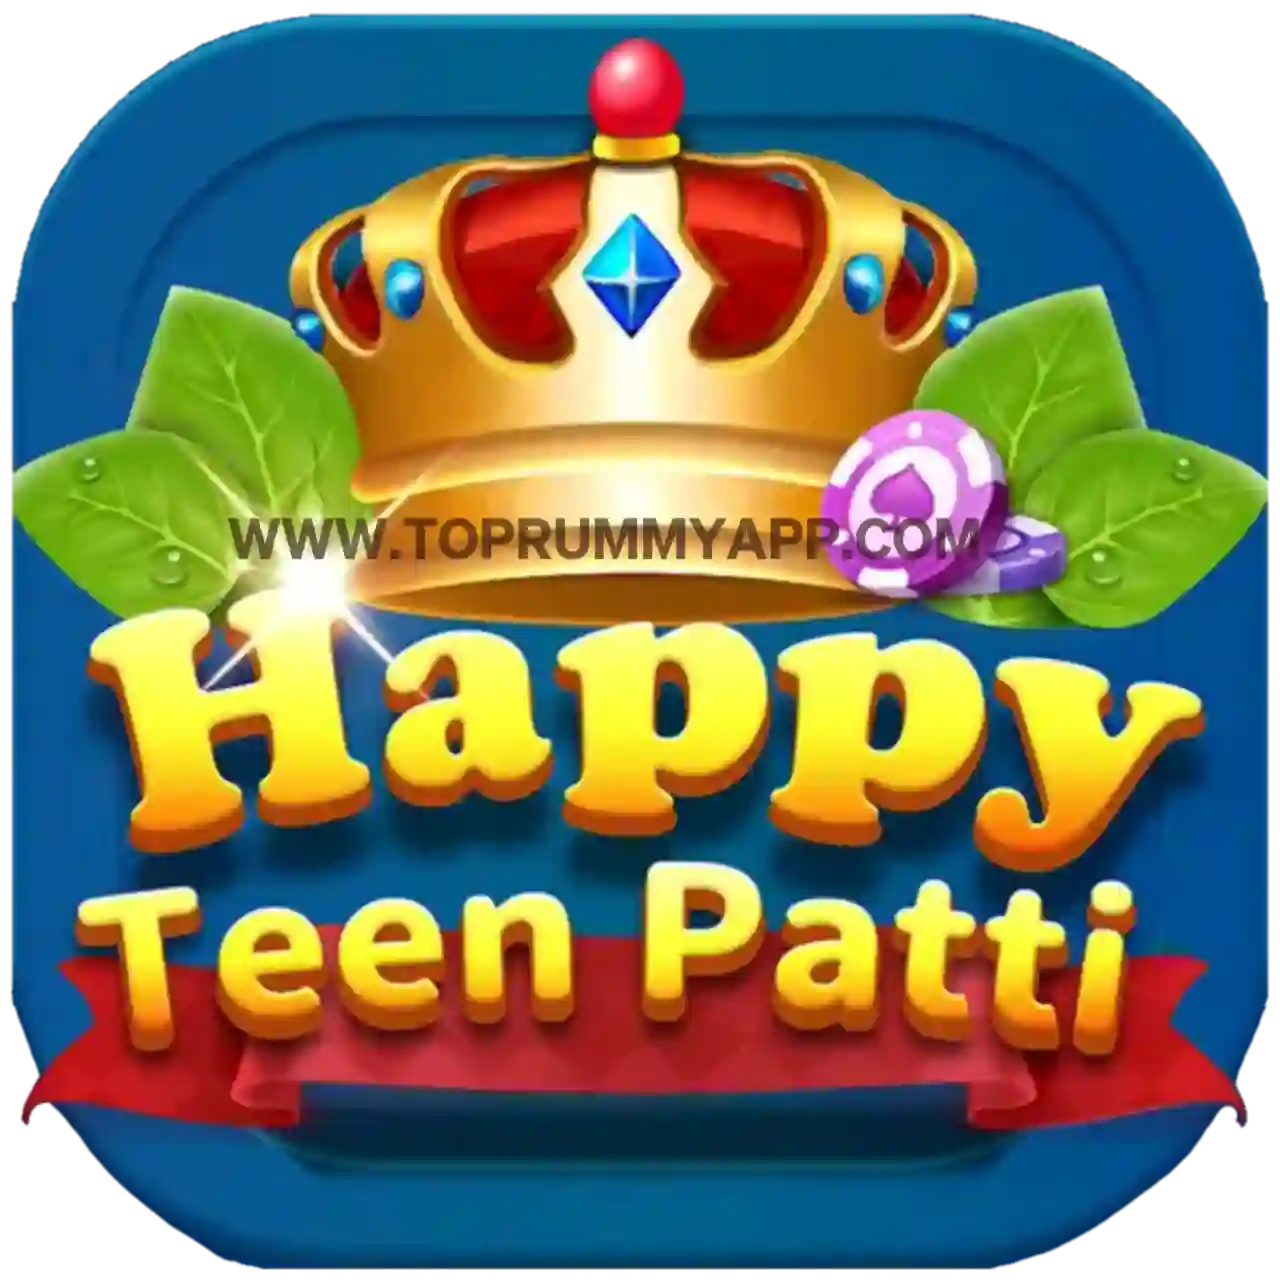 Happy Teen Patti App - Top 20 Teen Patti App List